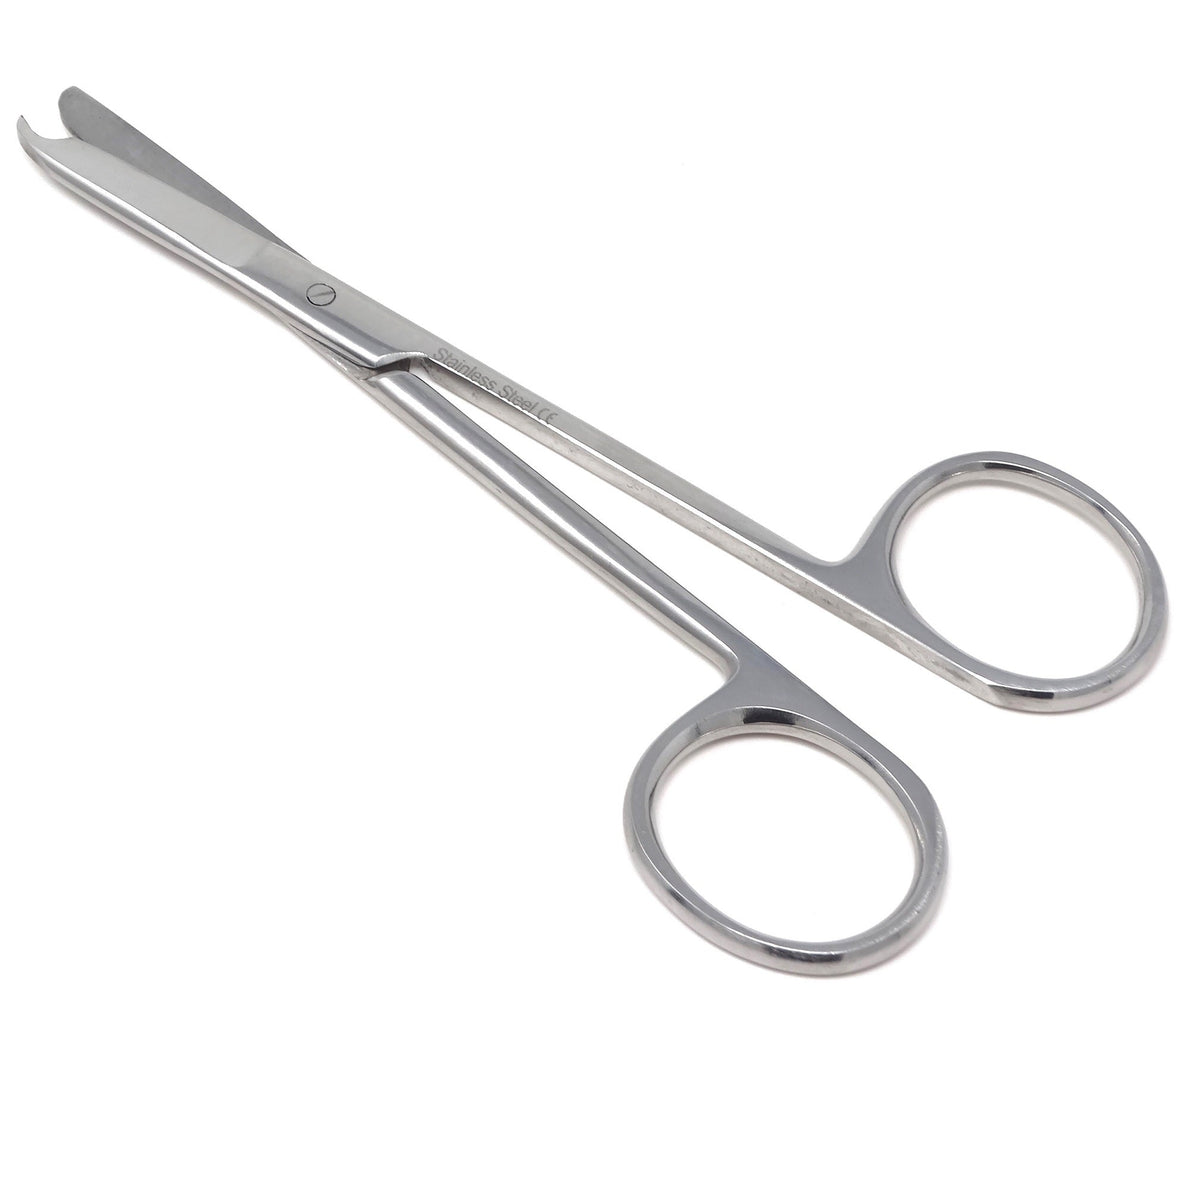 Premium Quality Suture Northbent Stitch Curved Scissors 3.5